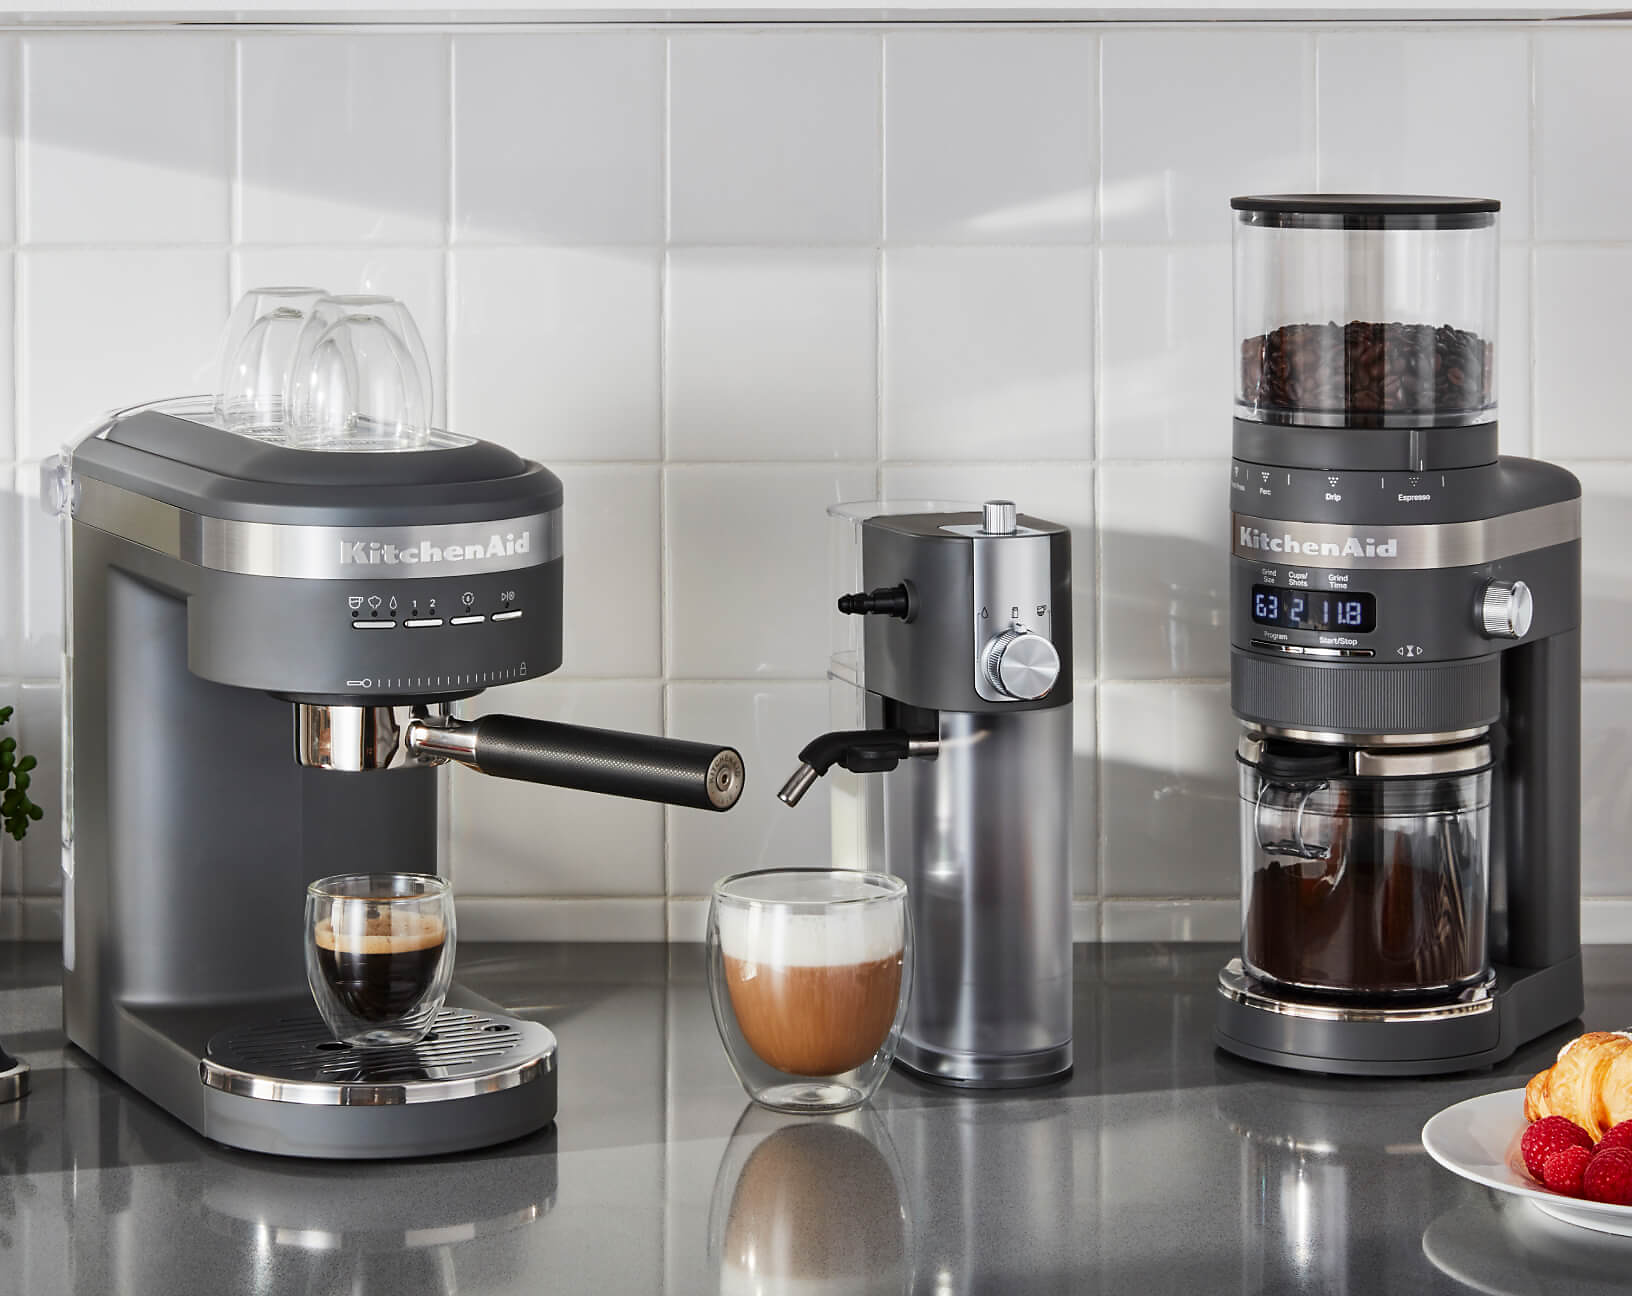 Welche Faktoren es vor dem Kauf die Kitchenaid espresso machine zu analysieren gilt